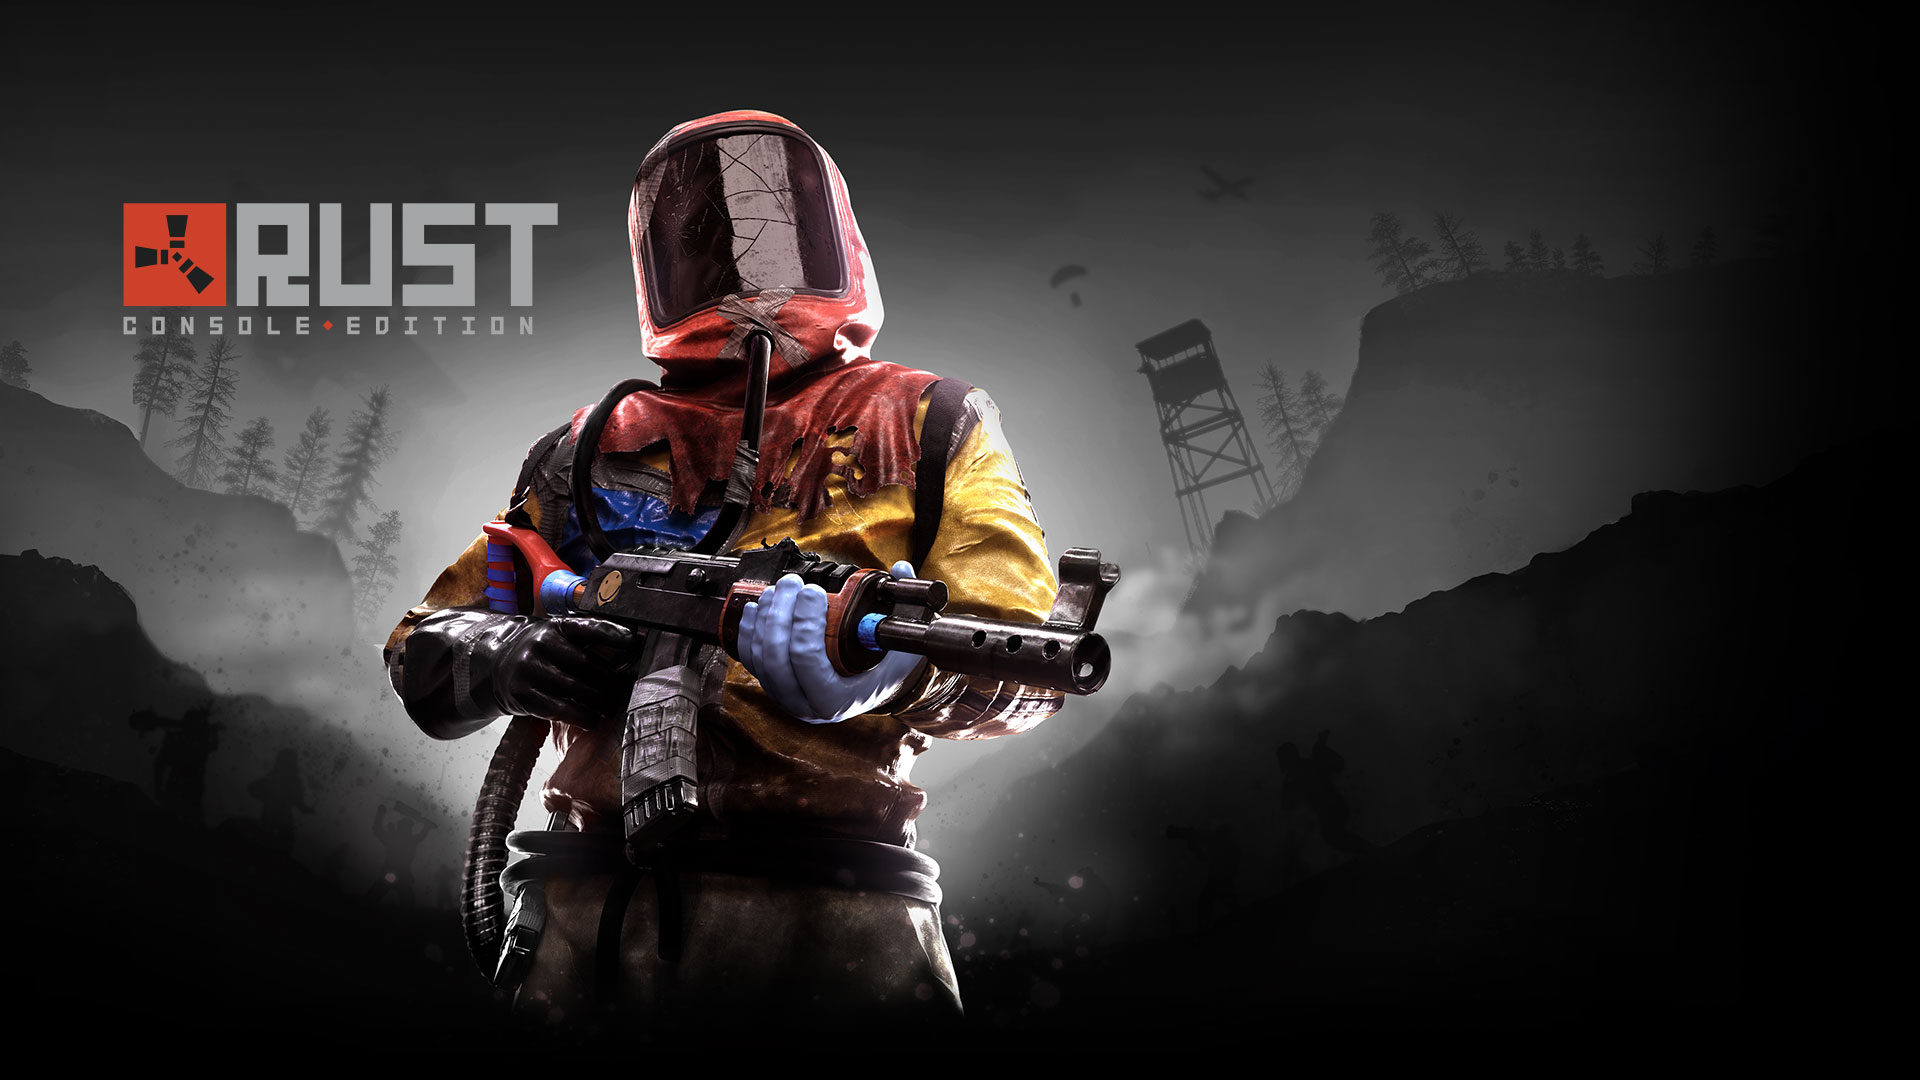 Rust Console Edition. Postava ze hry Rust v temném údolí drží střelnou zbraň.